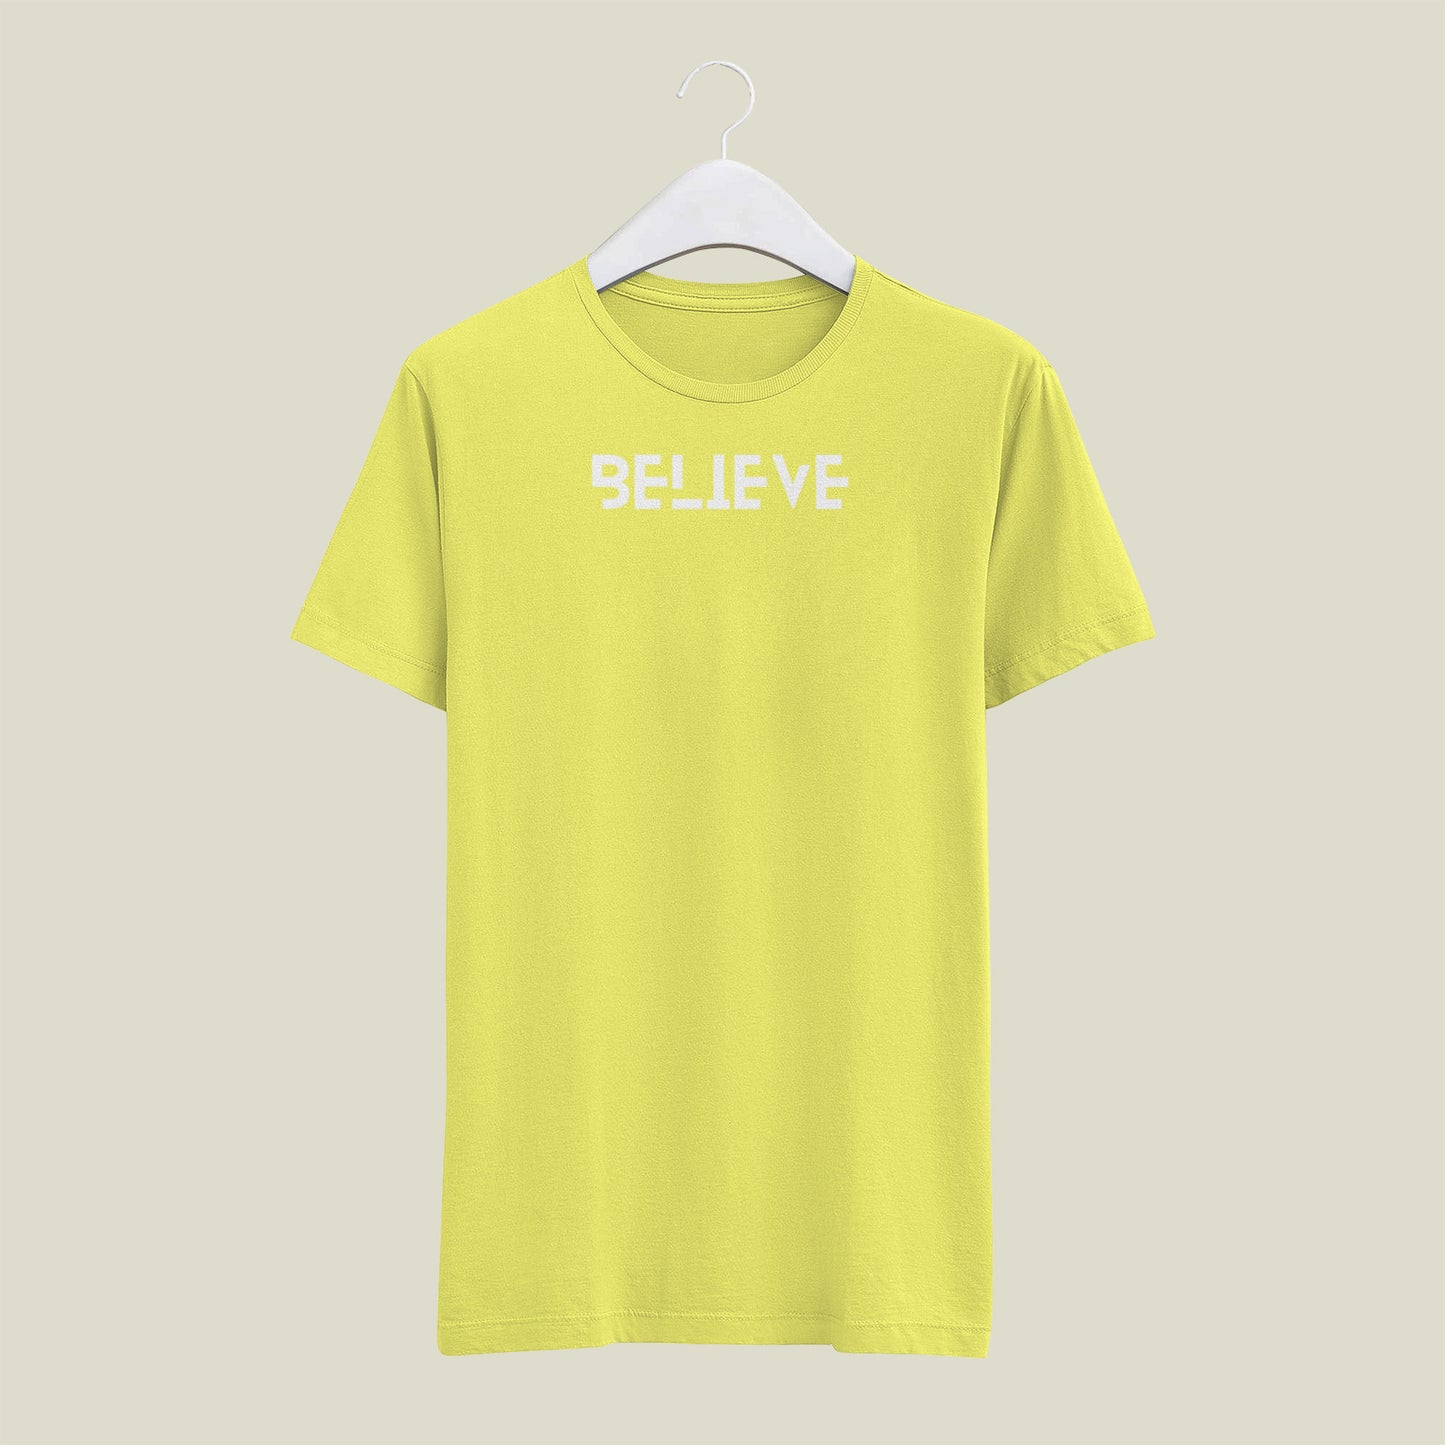 BELIEVE T shirt